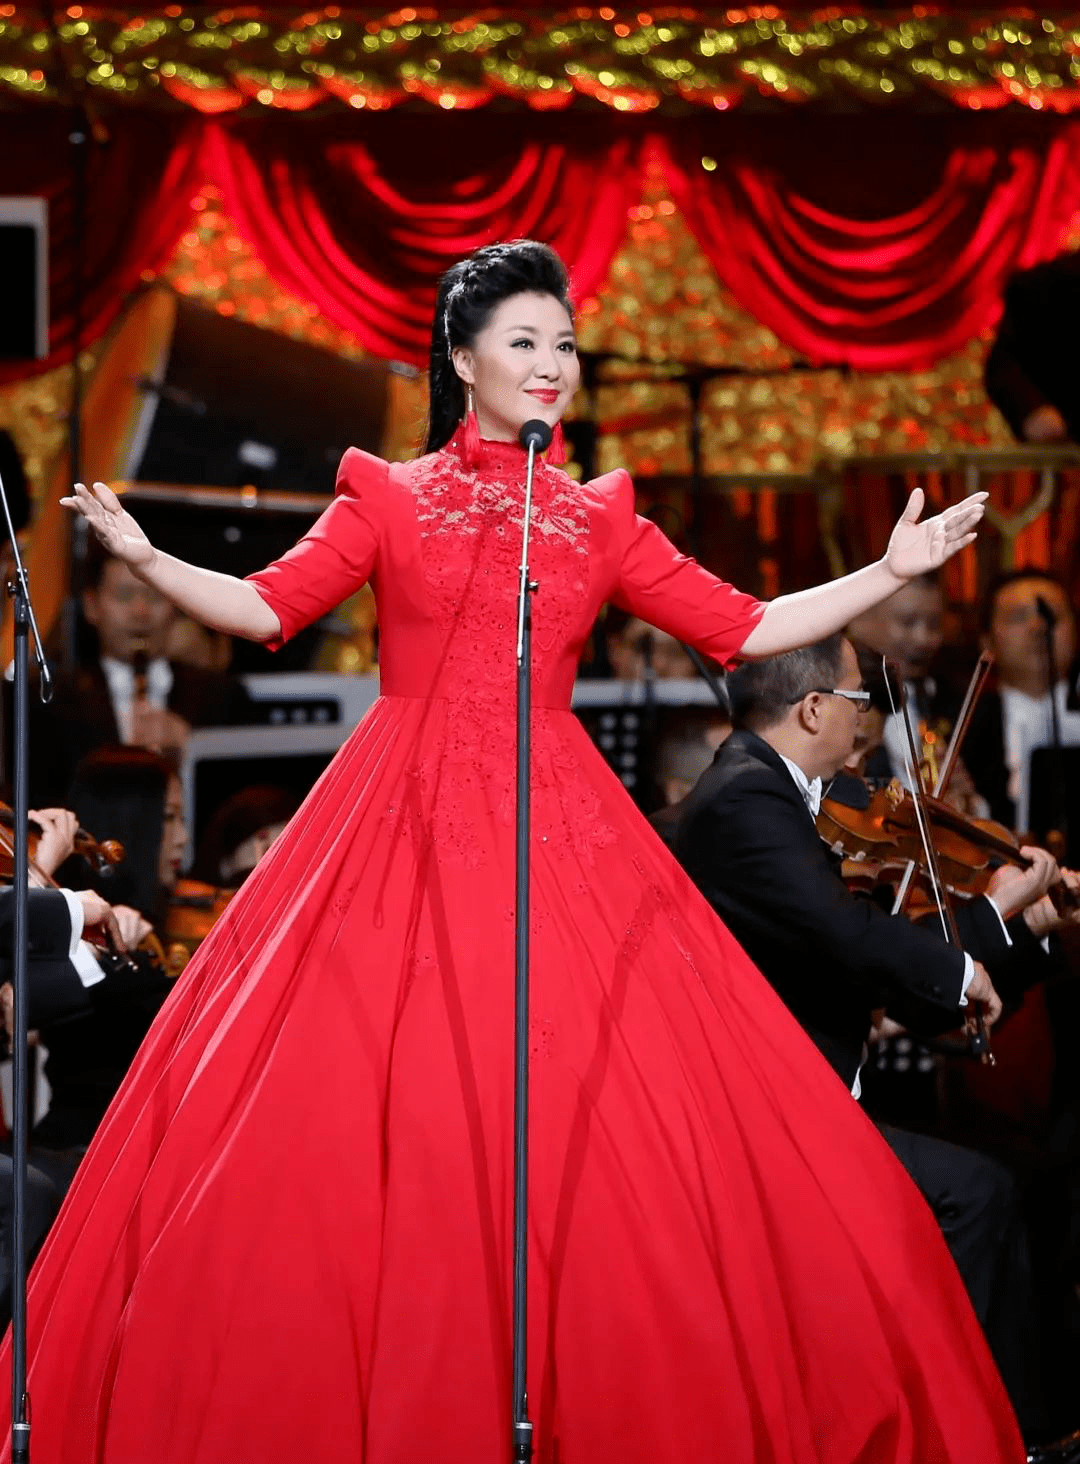 她就是这首歌曲的演唱者,享誉国际的湖南籍女高音歌唱家——王丽达